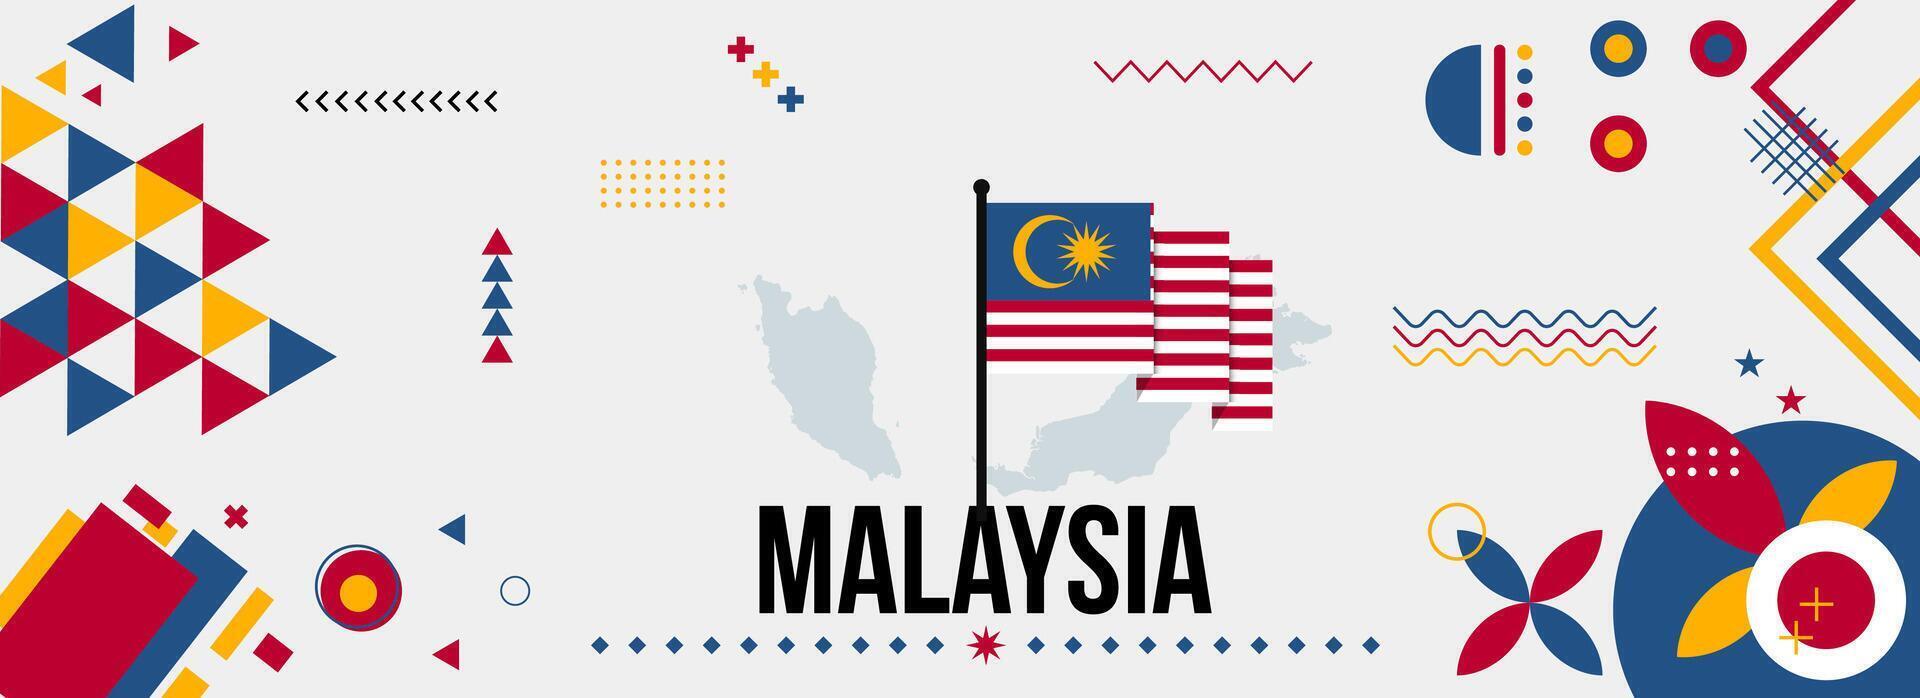 Malaysia nazionale o indipendenza giorno bandiera per nazione celebrazione. bandiera e carta geografica di Malaysia con moderno retrò design con typorgaphy astratto geometrico icone. vettore illustrazione.